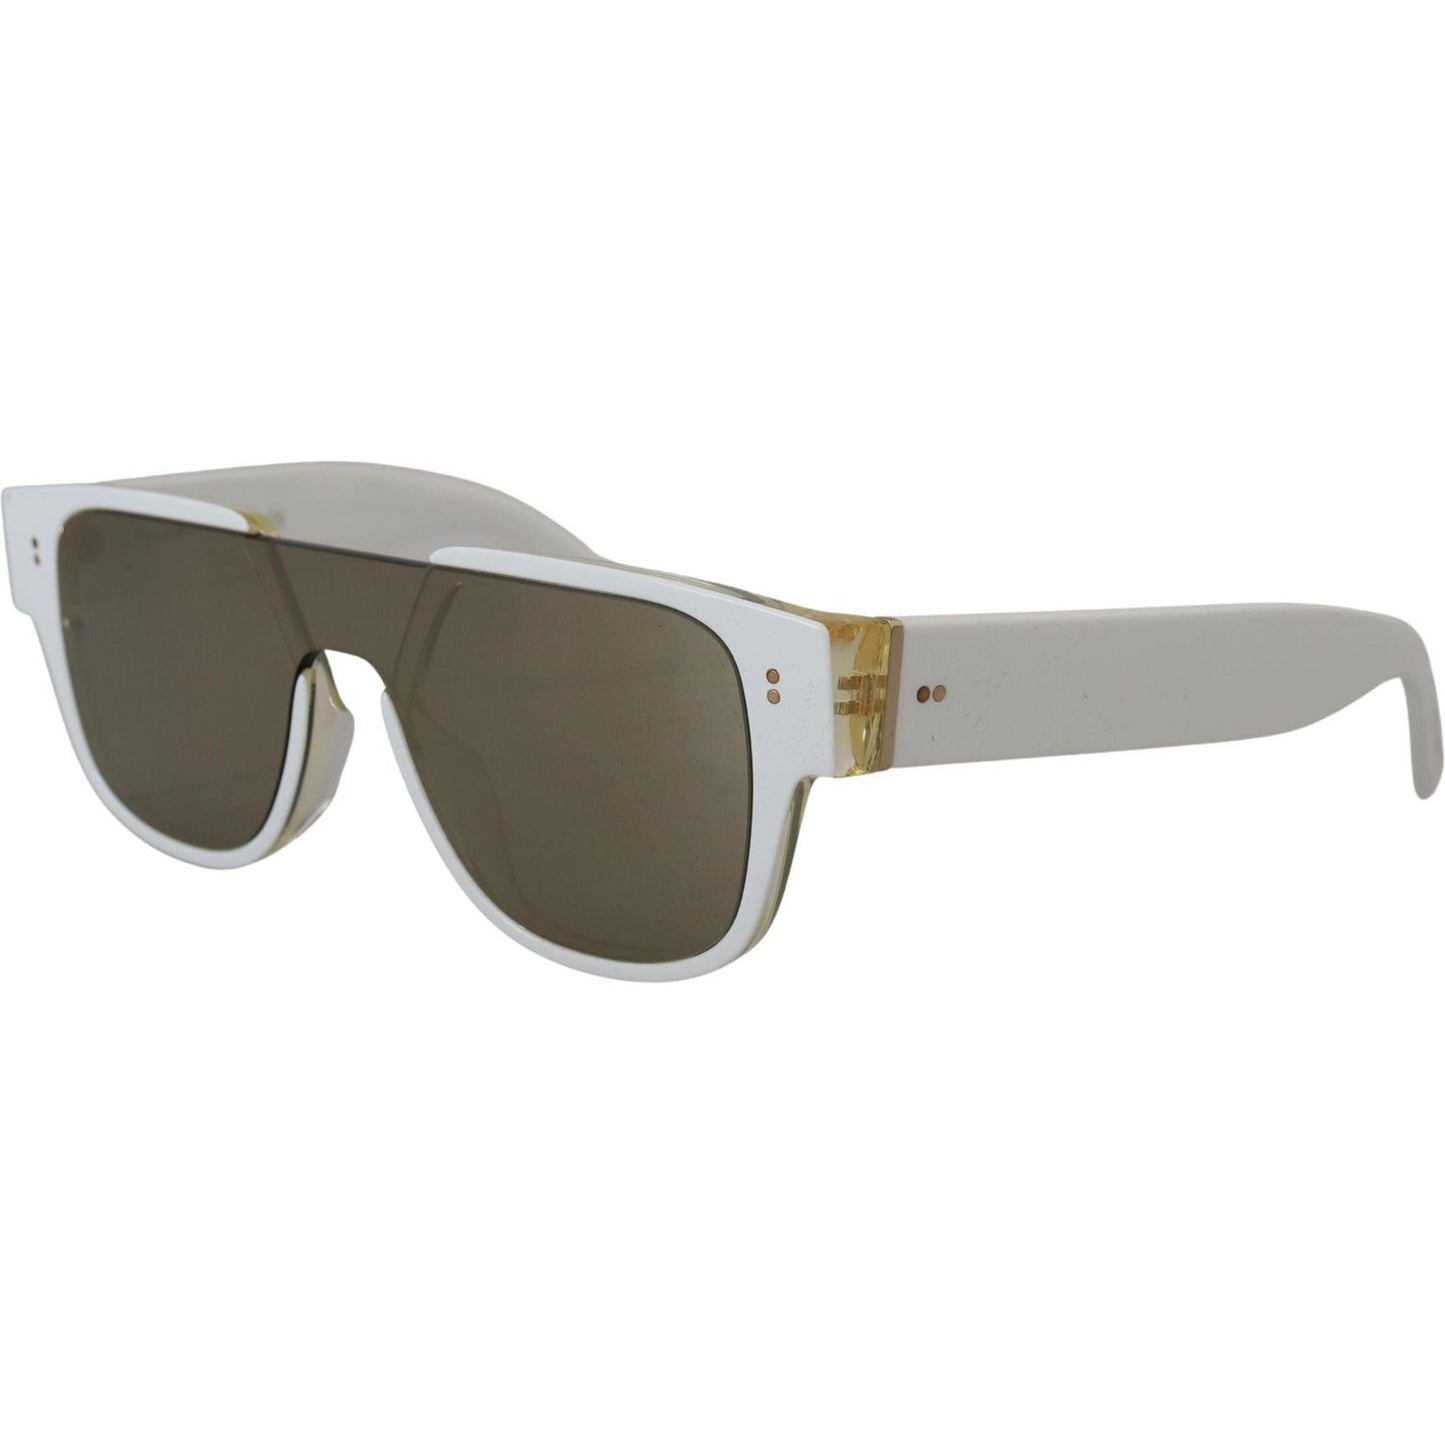 Dolce & Gabbana Elegant White Acetate Sunglasses for Women white-acetate-full-rim-frame-shades-dg4356f-sunglasses IMG_4035-scaled-6fbbf4b2-1fd.jpg